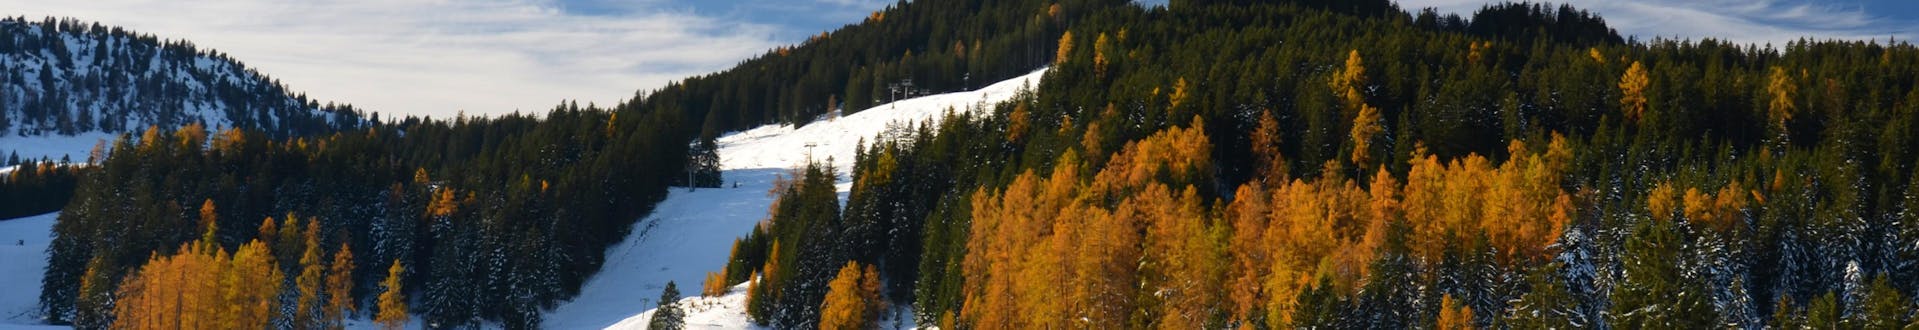 Les pistes de ski de Brand - Brandnertal, où vous pouvez réserver des leçons de ski en ligne.